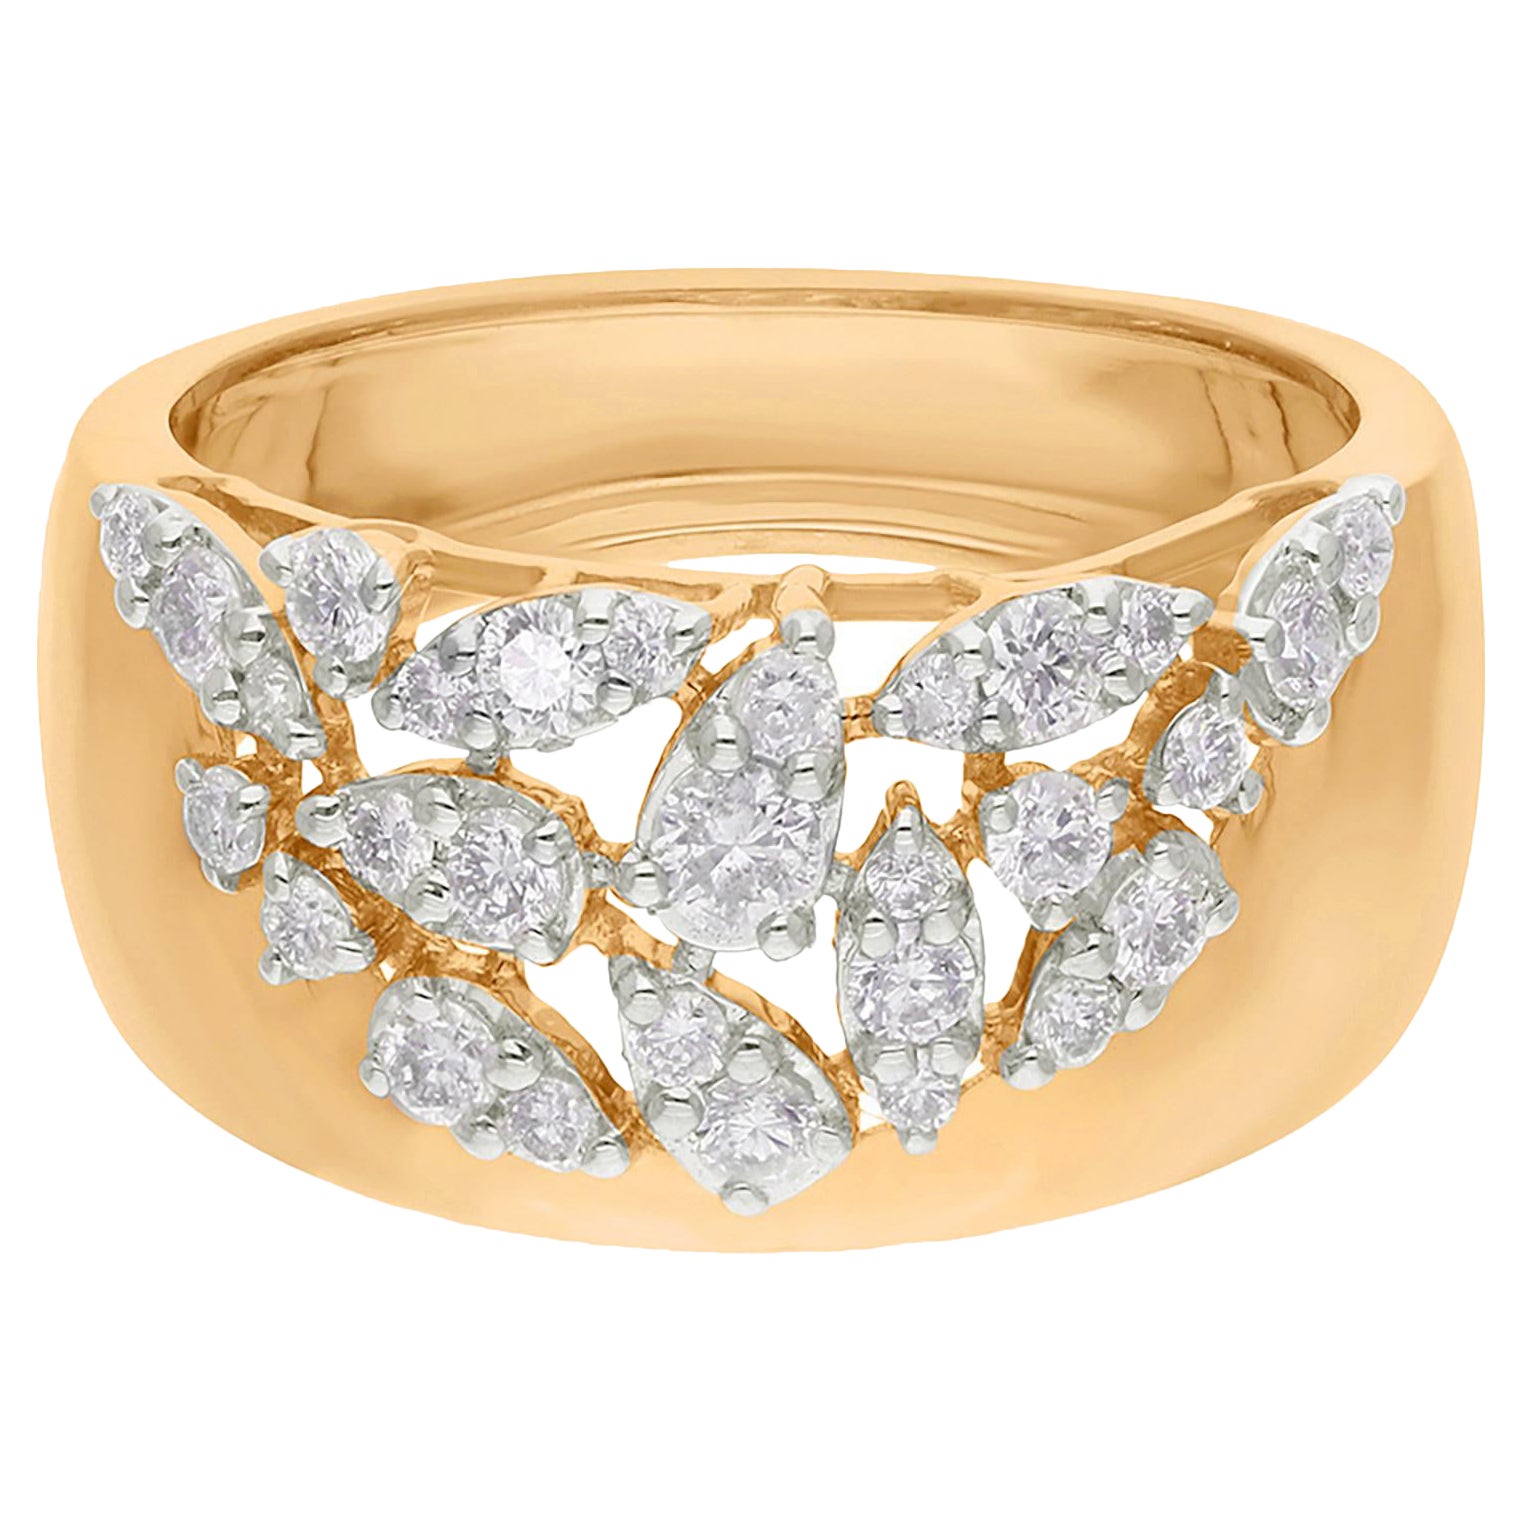 Bague artisanale en or jaune 14 carats avec diamant rond naturel de 0,51 carat